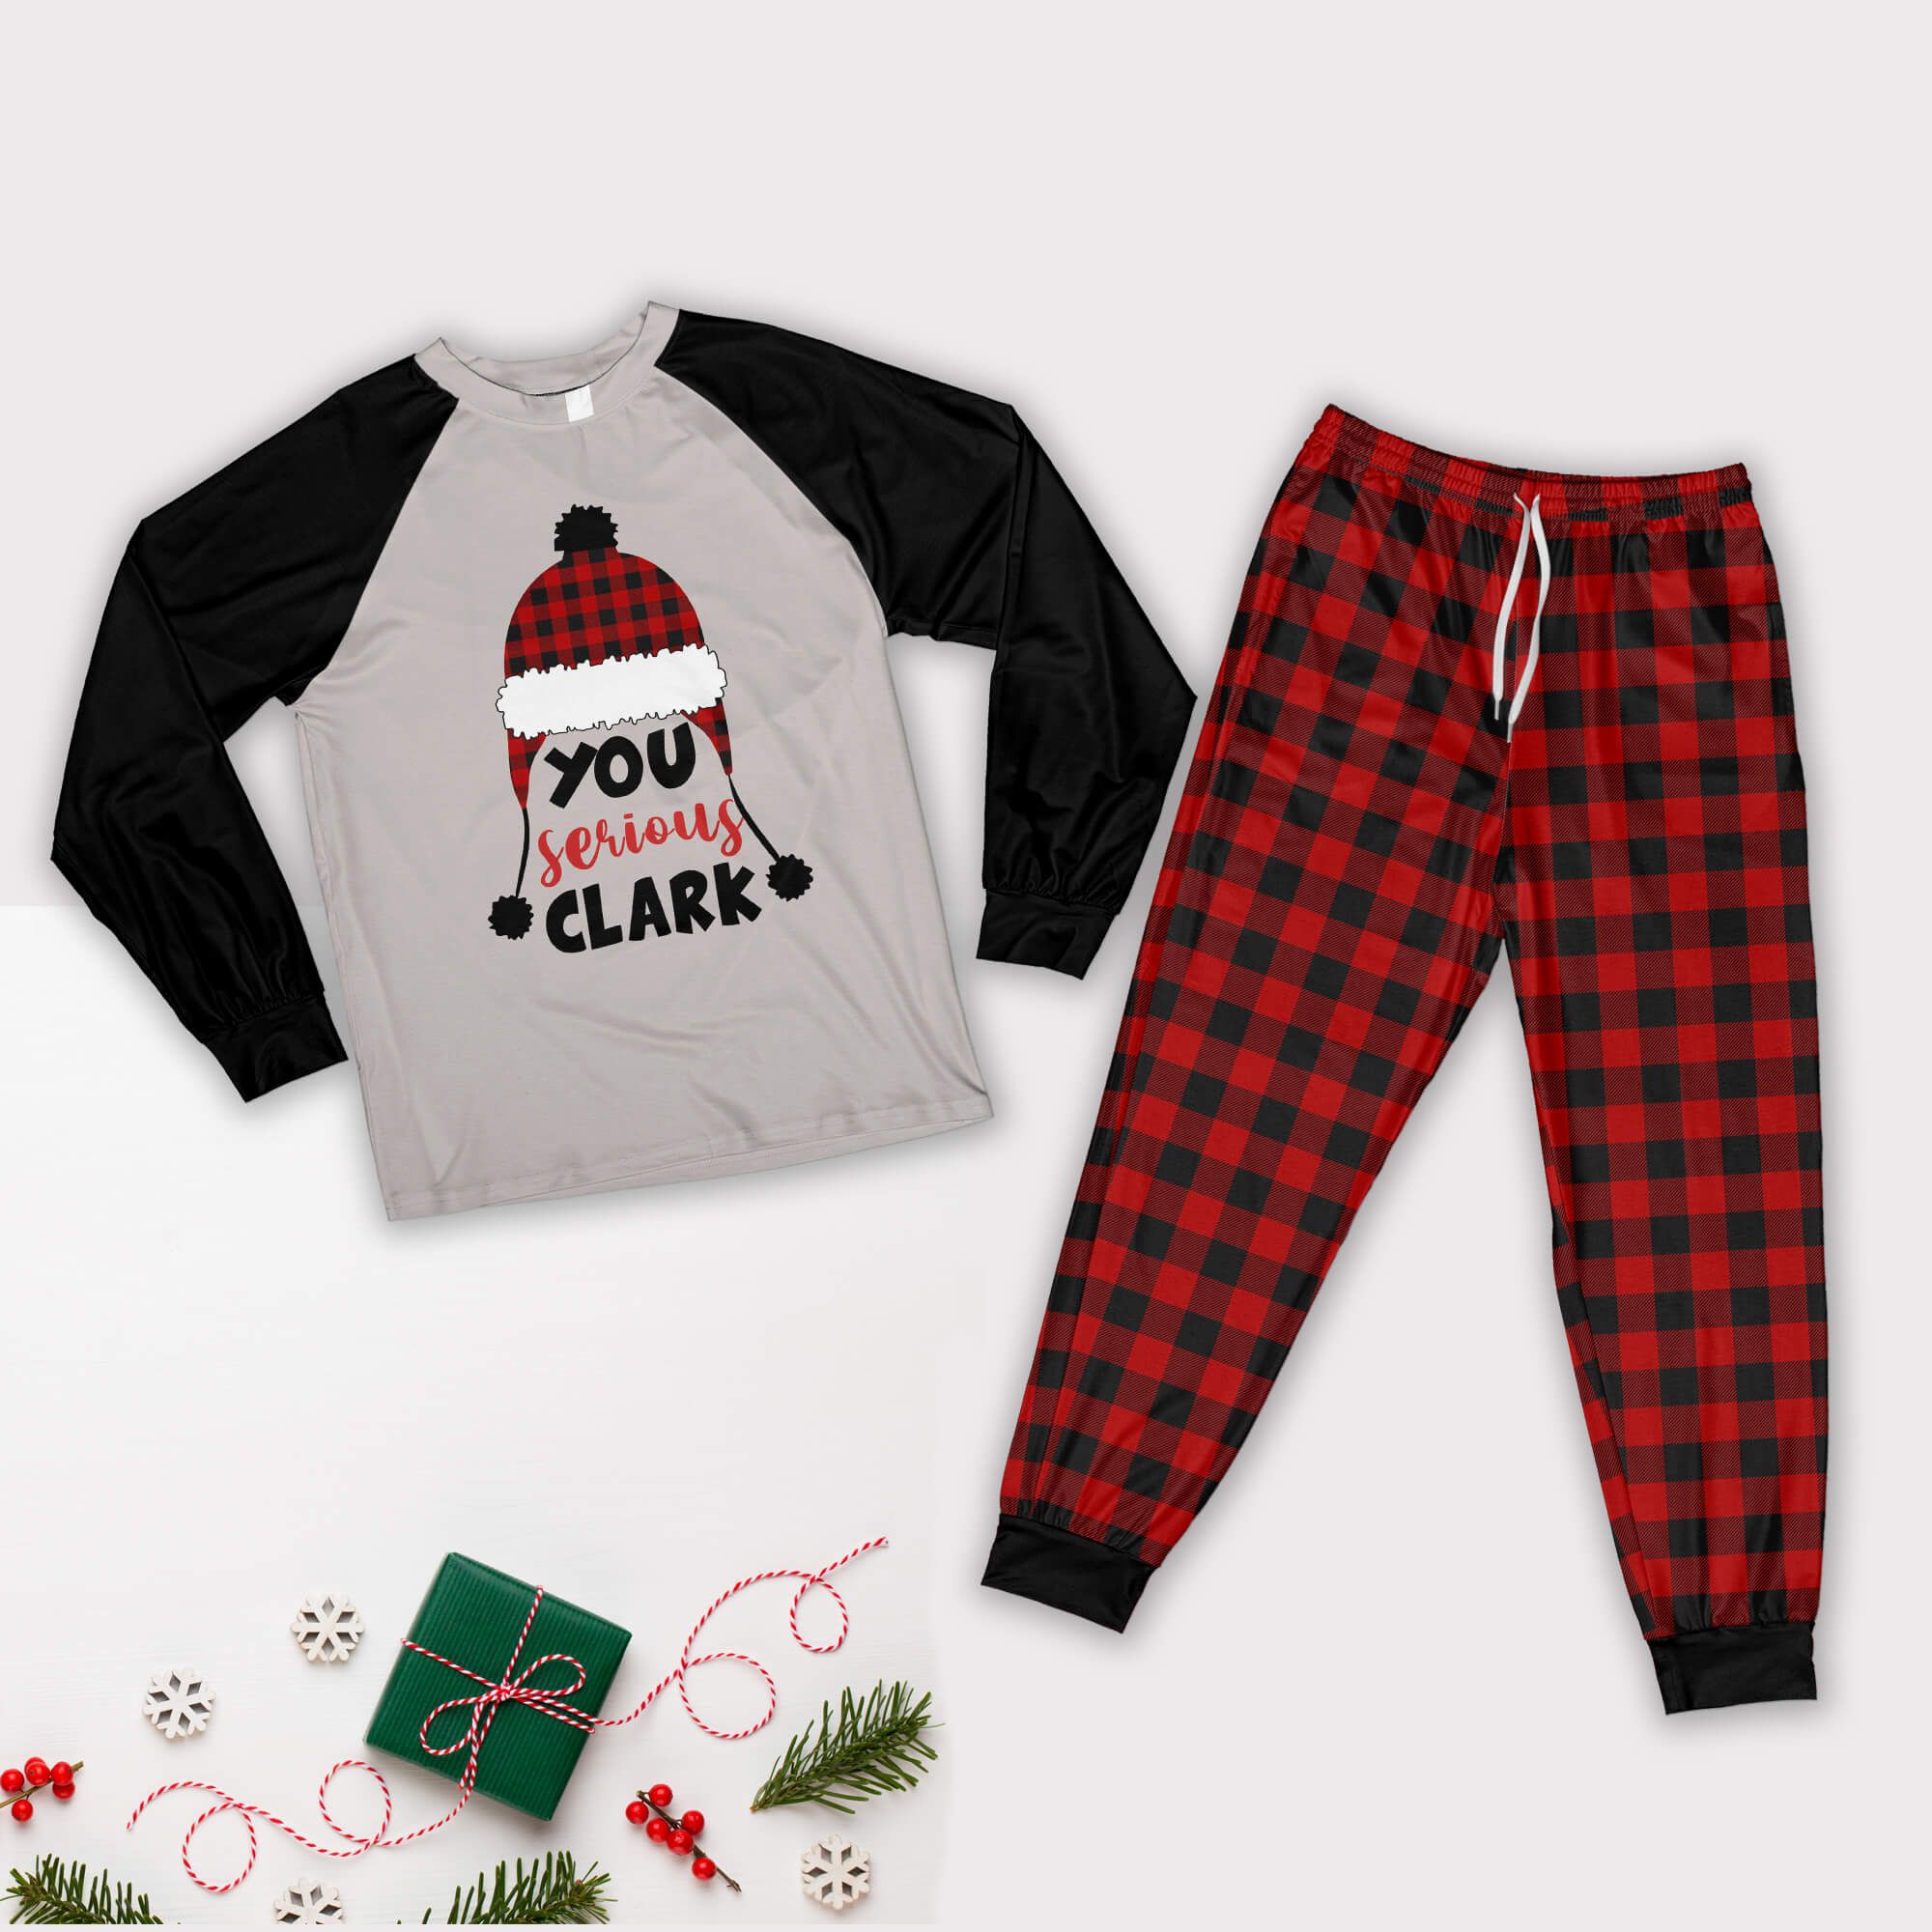 You Serious Clark Family Christmas Pajamas Set Pajamas Shirt Black XS